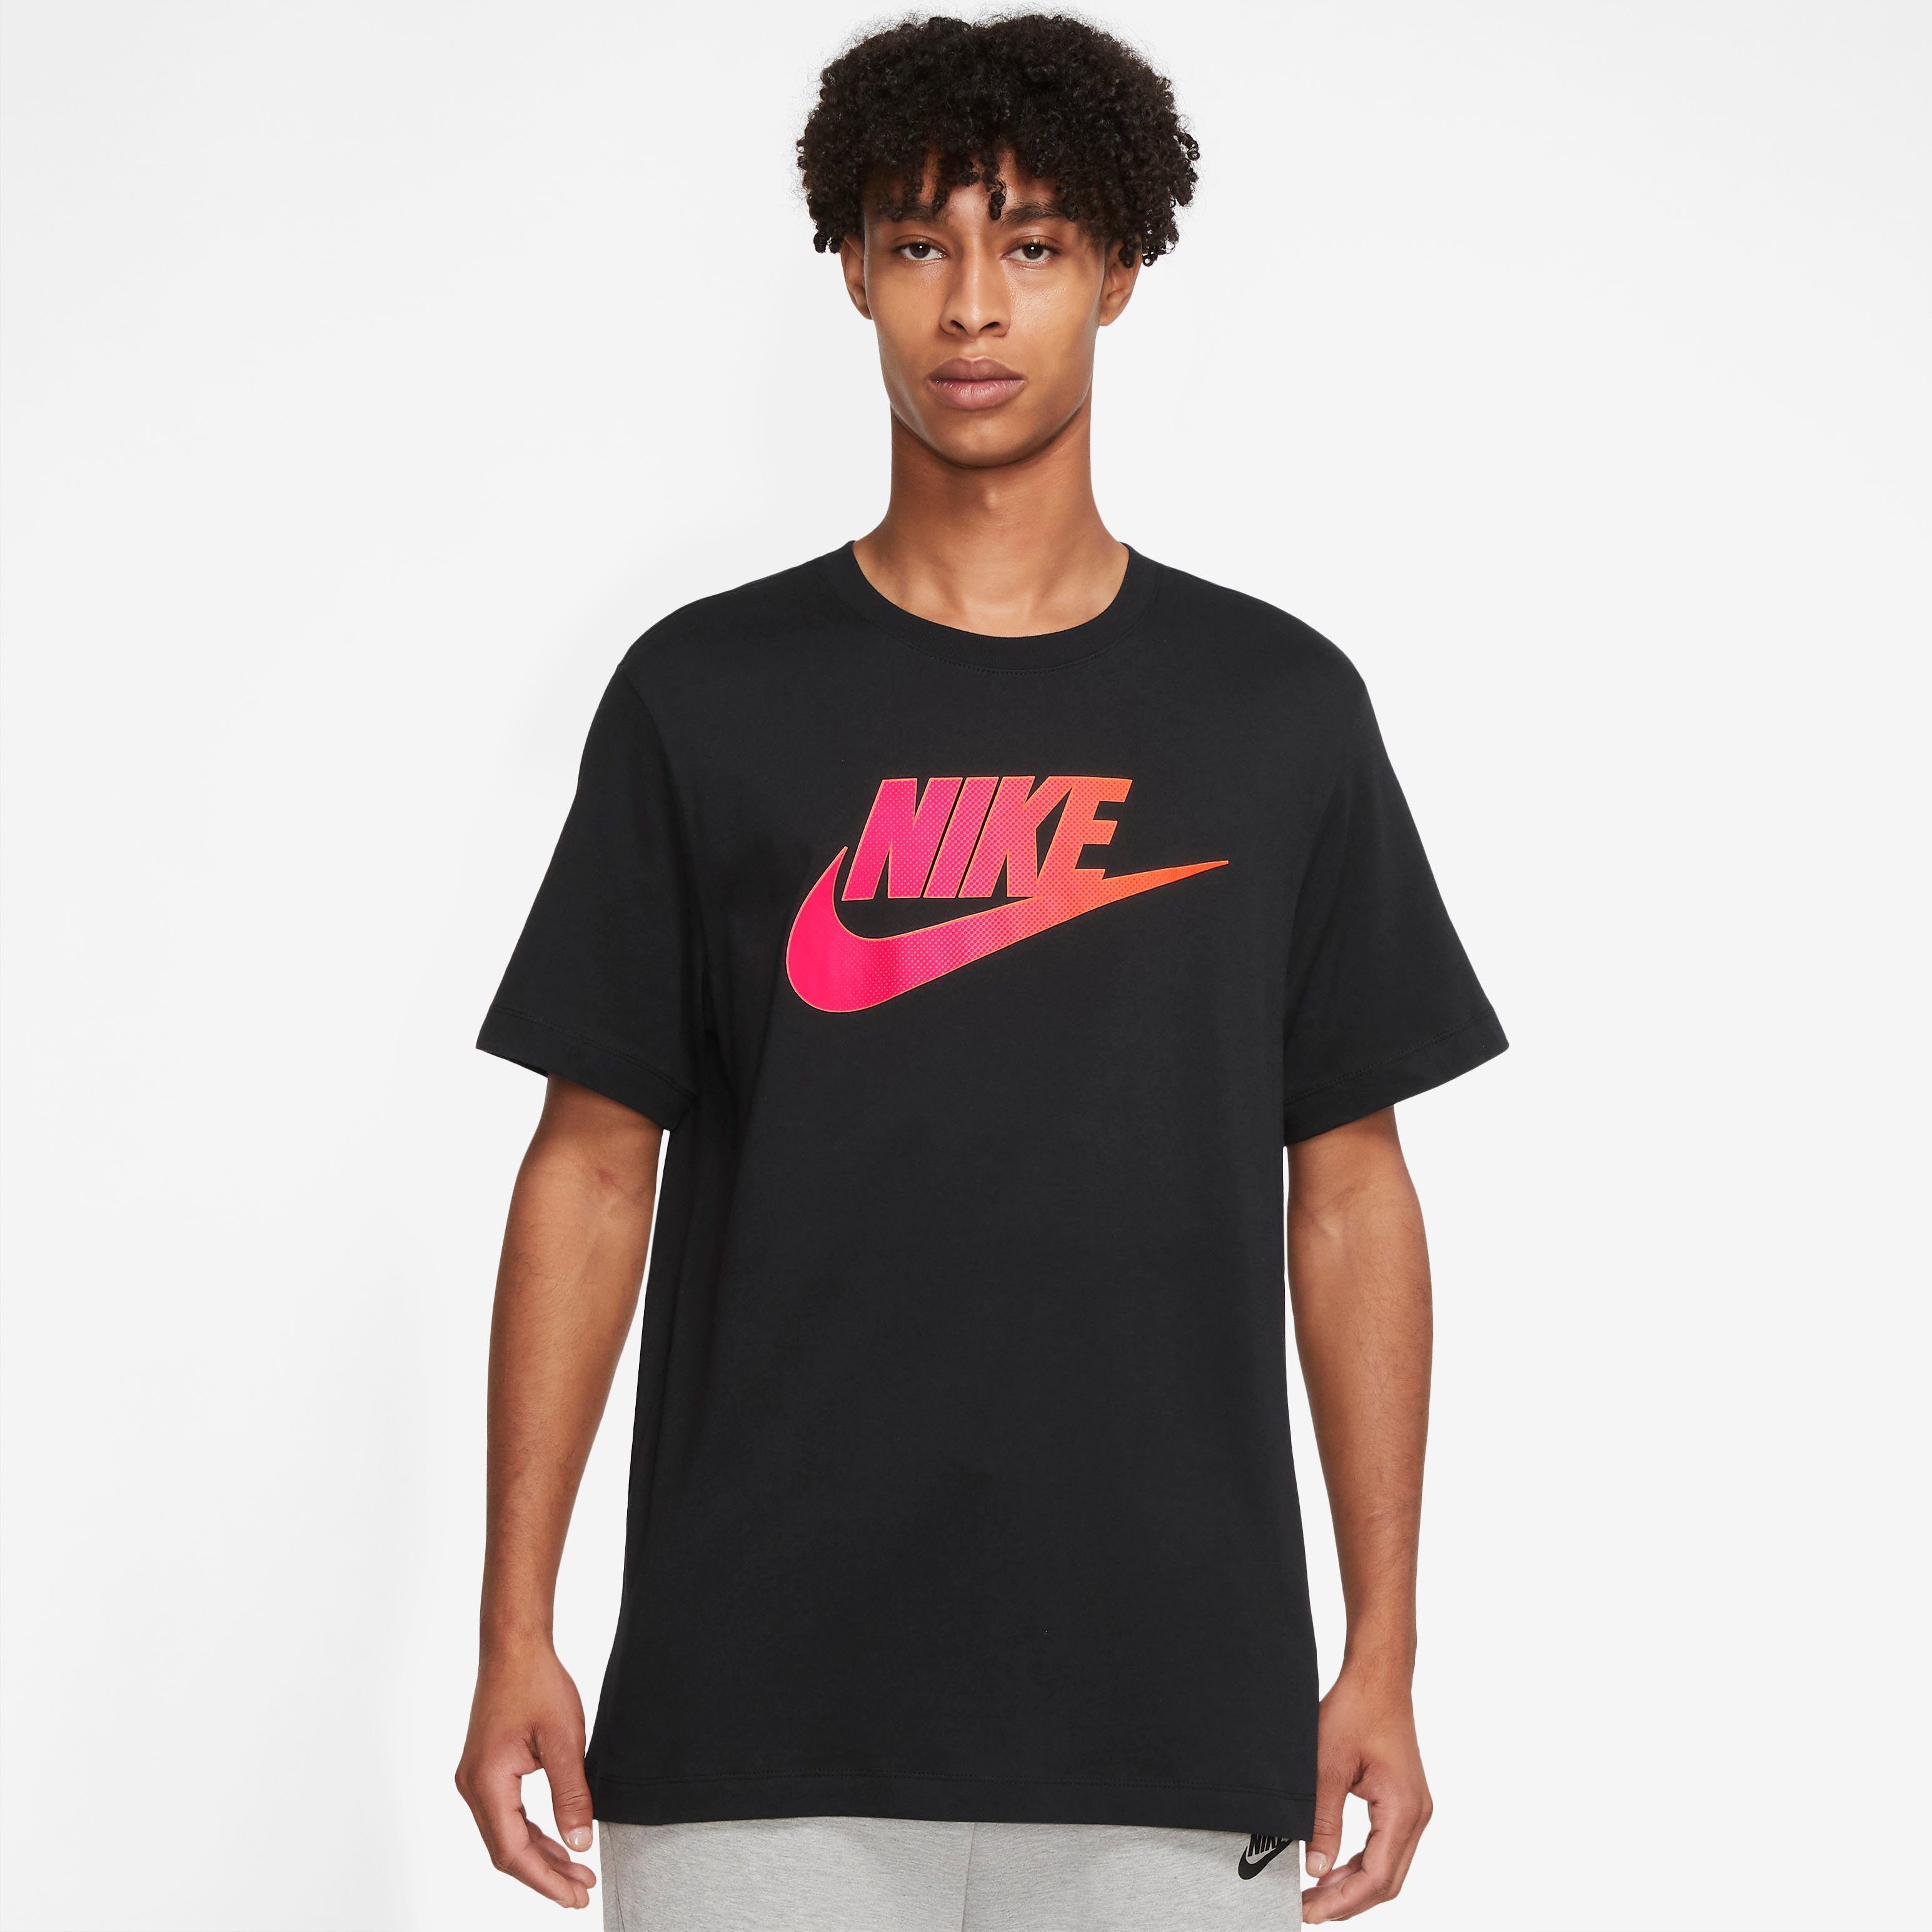 Nike Herren Shirts online kaufen | OTTO